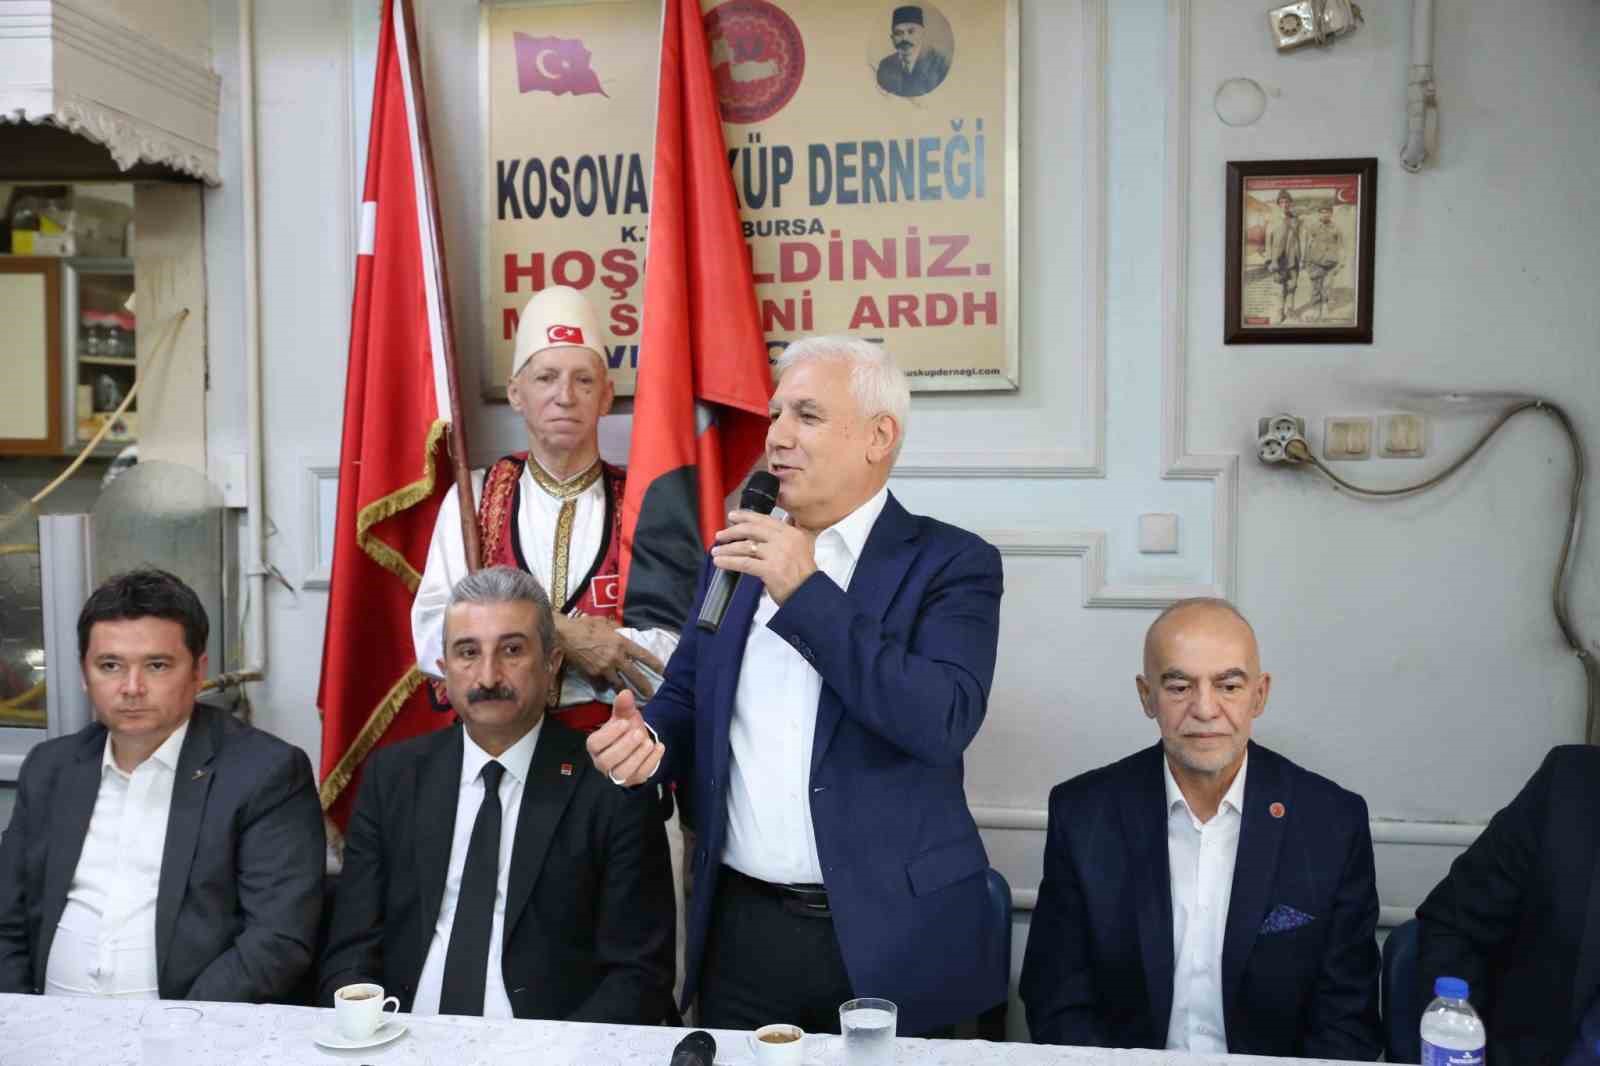 Bursa Büyükşehir Belediye Başkan Adayı Mustafa Bozbey: “Bursada Kentsel Dönüşüm Yapılmadı